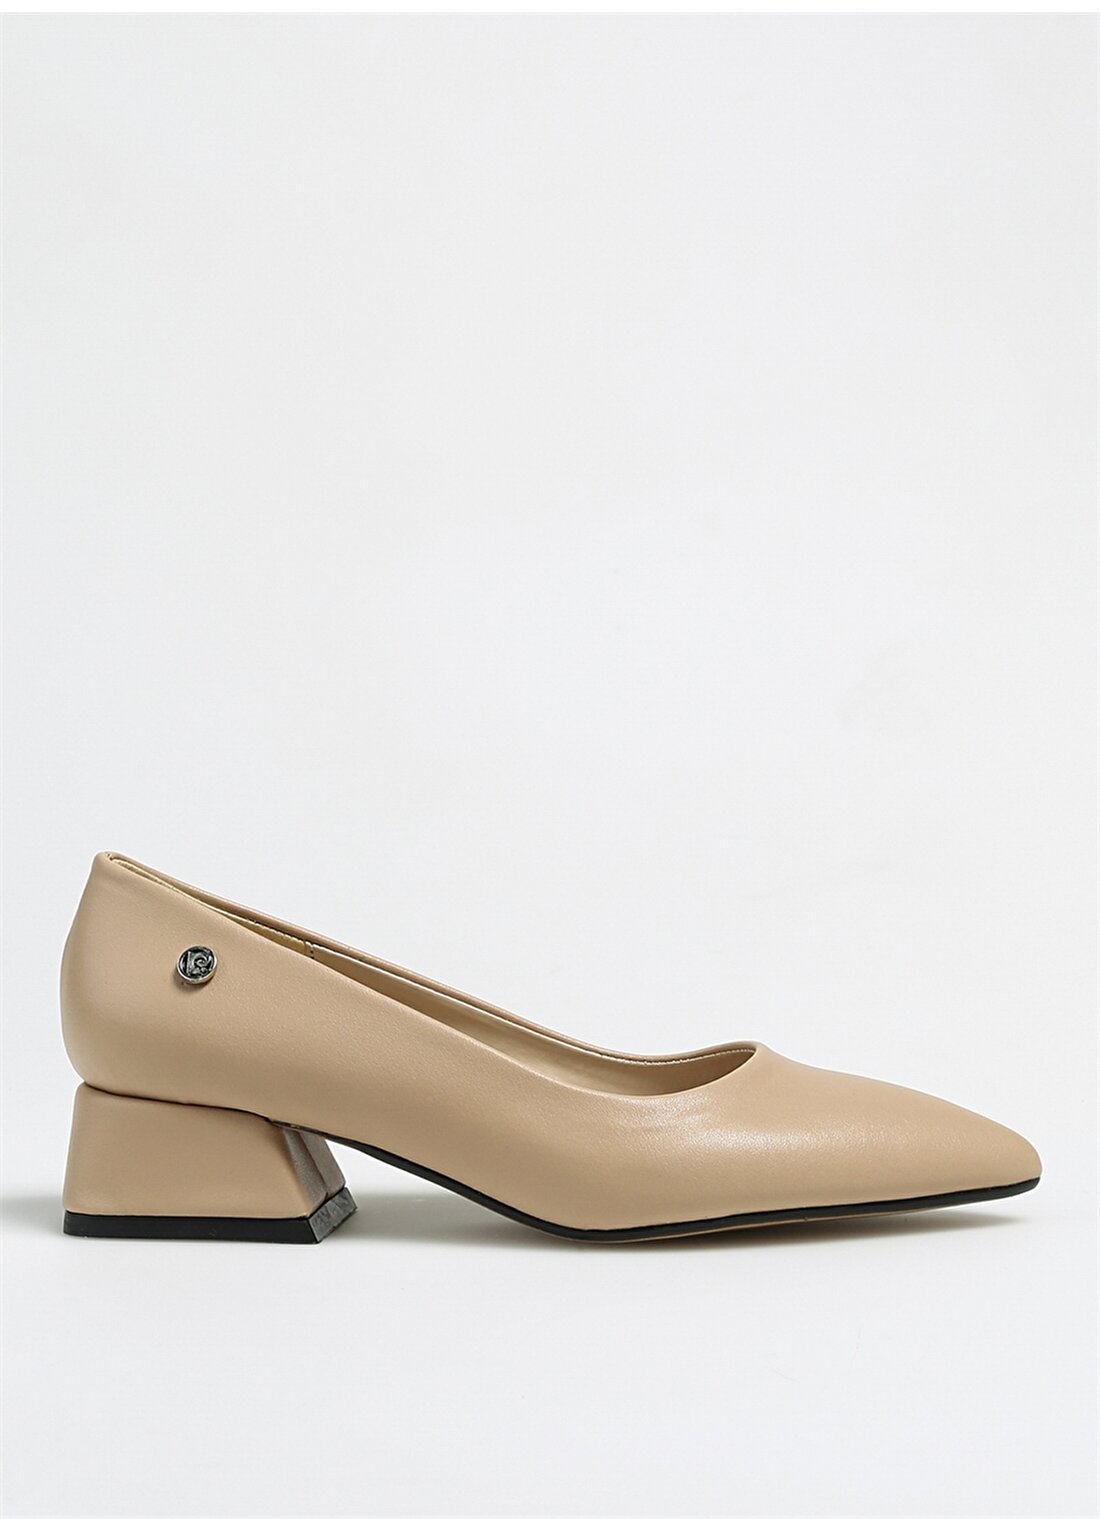 Pierre Cardin Bej Kadın Topuklu Ayakkabı PC-52009